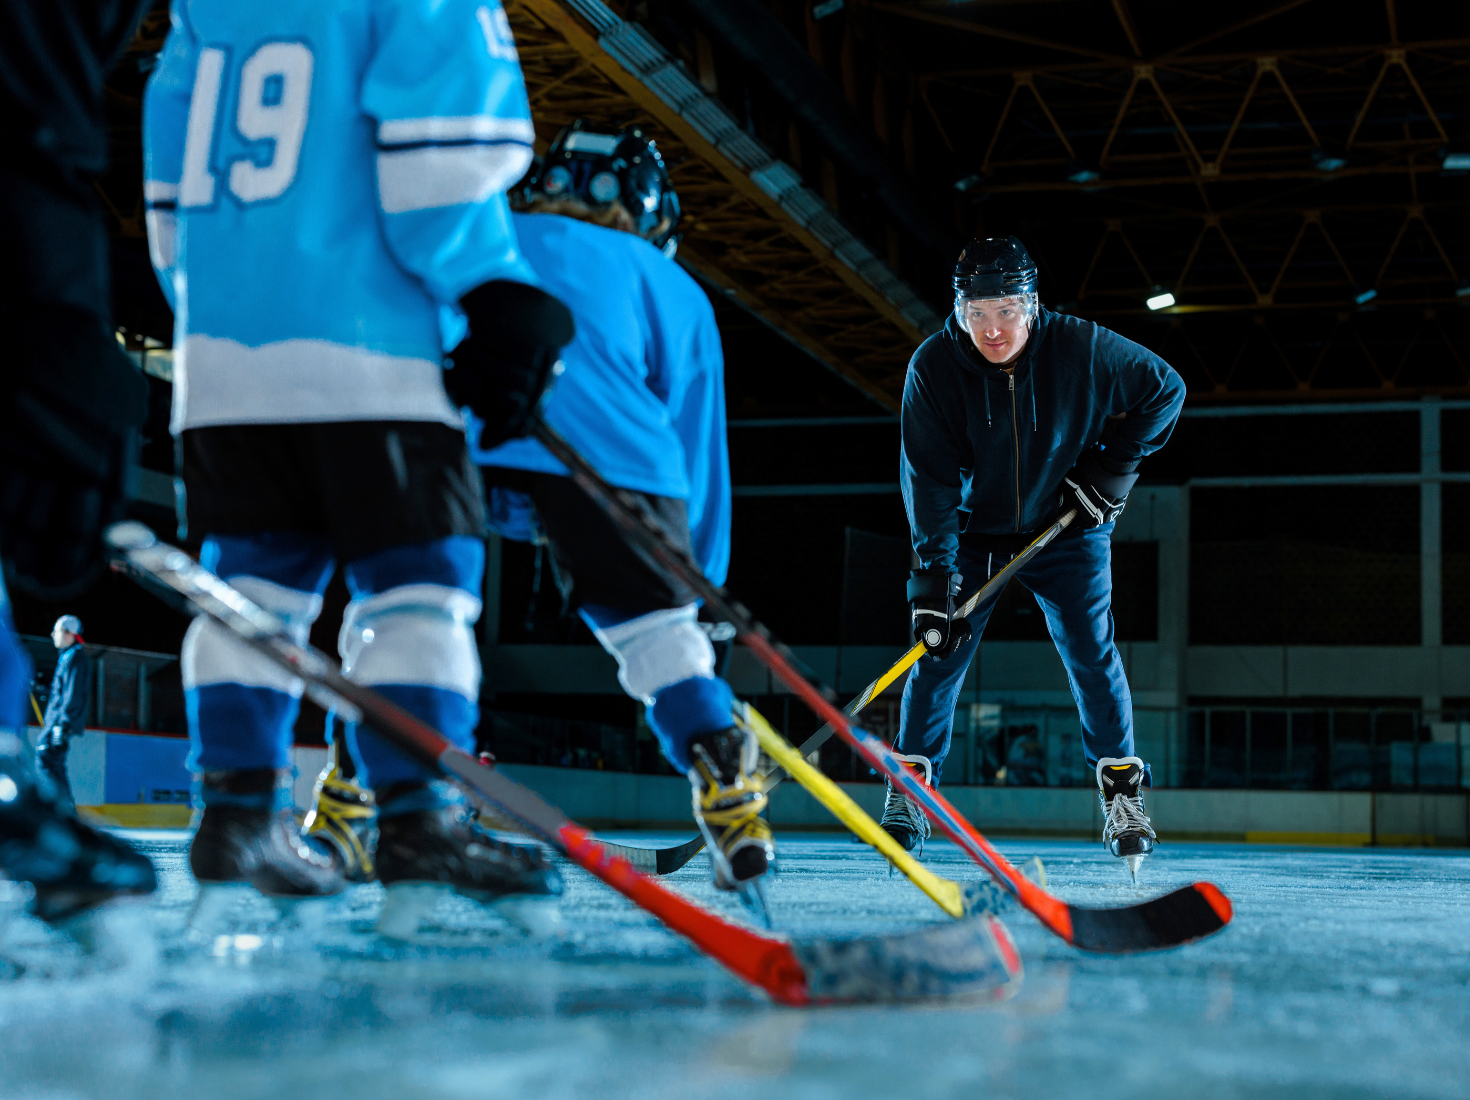 Jääkiekkokaukalossa aikuinen ohjaamassa nuorten jääkiekkoilijoiden pelaamista.